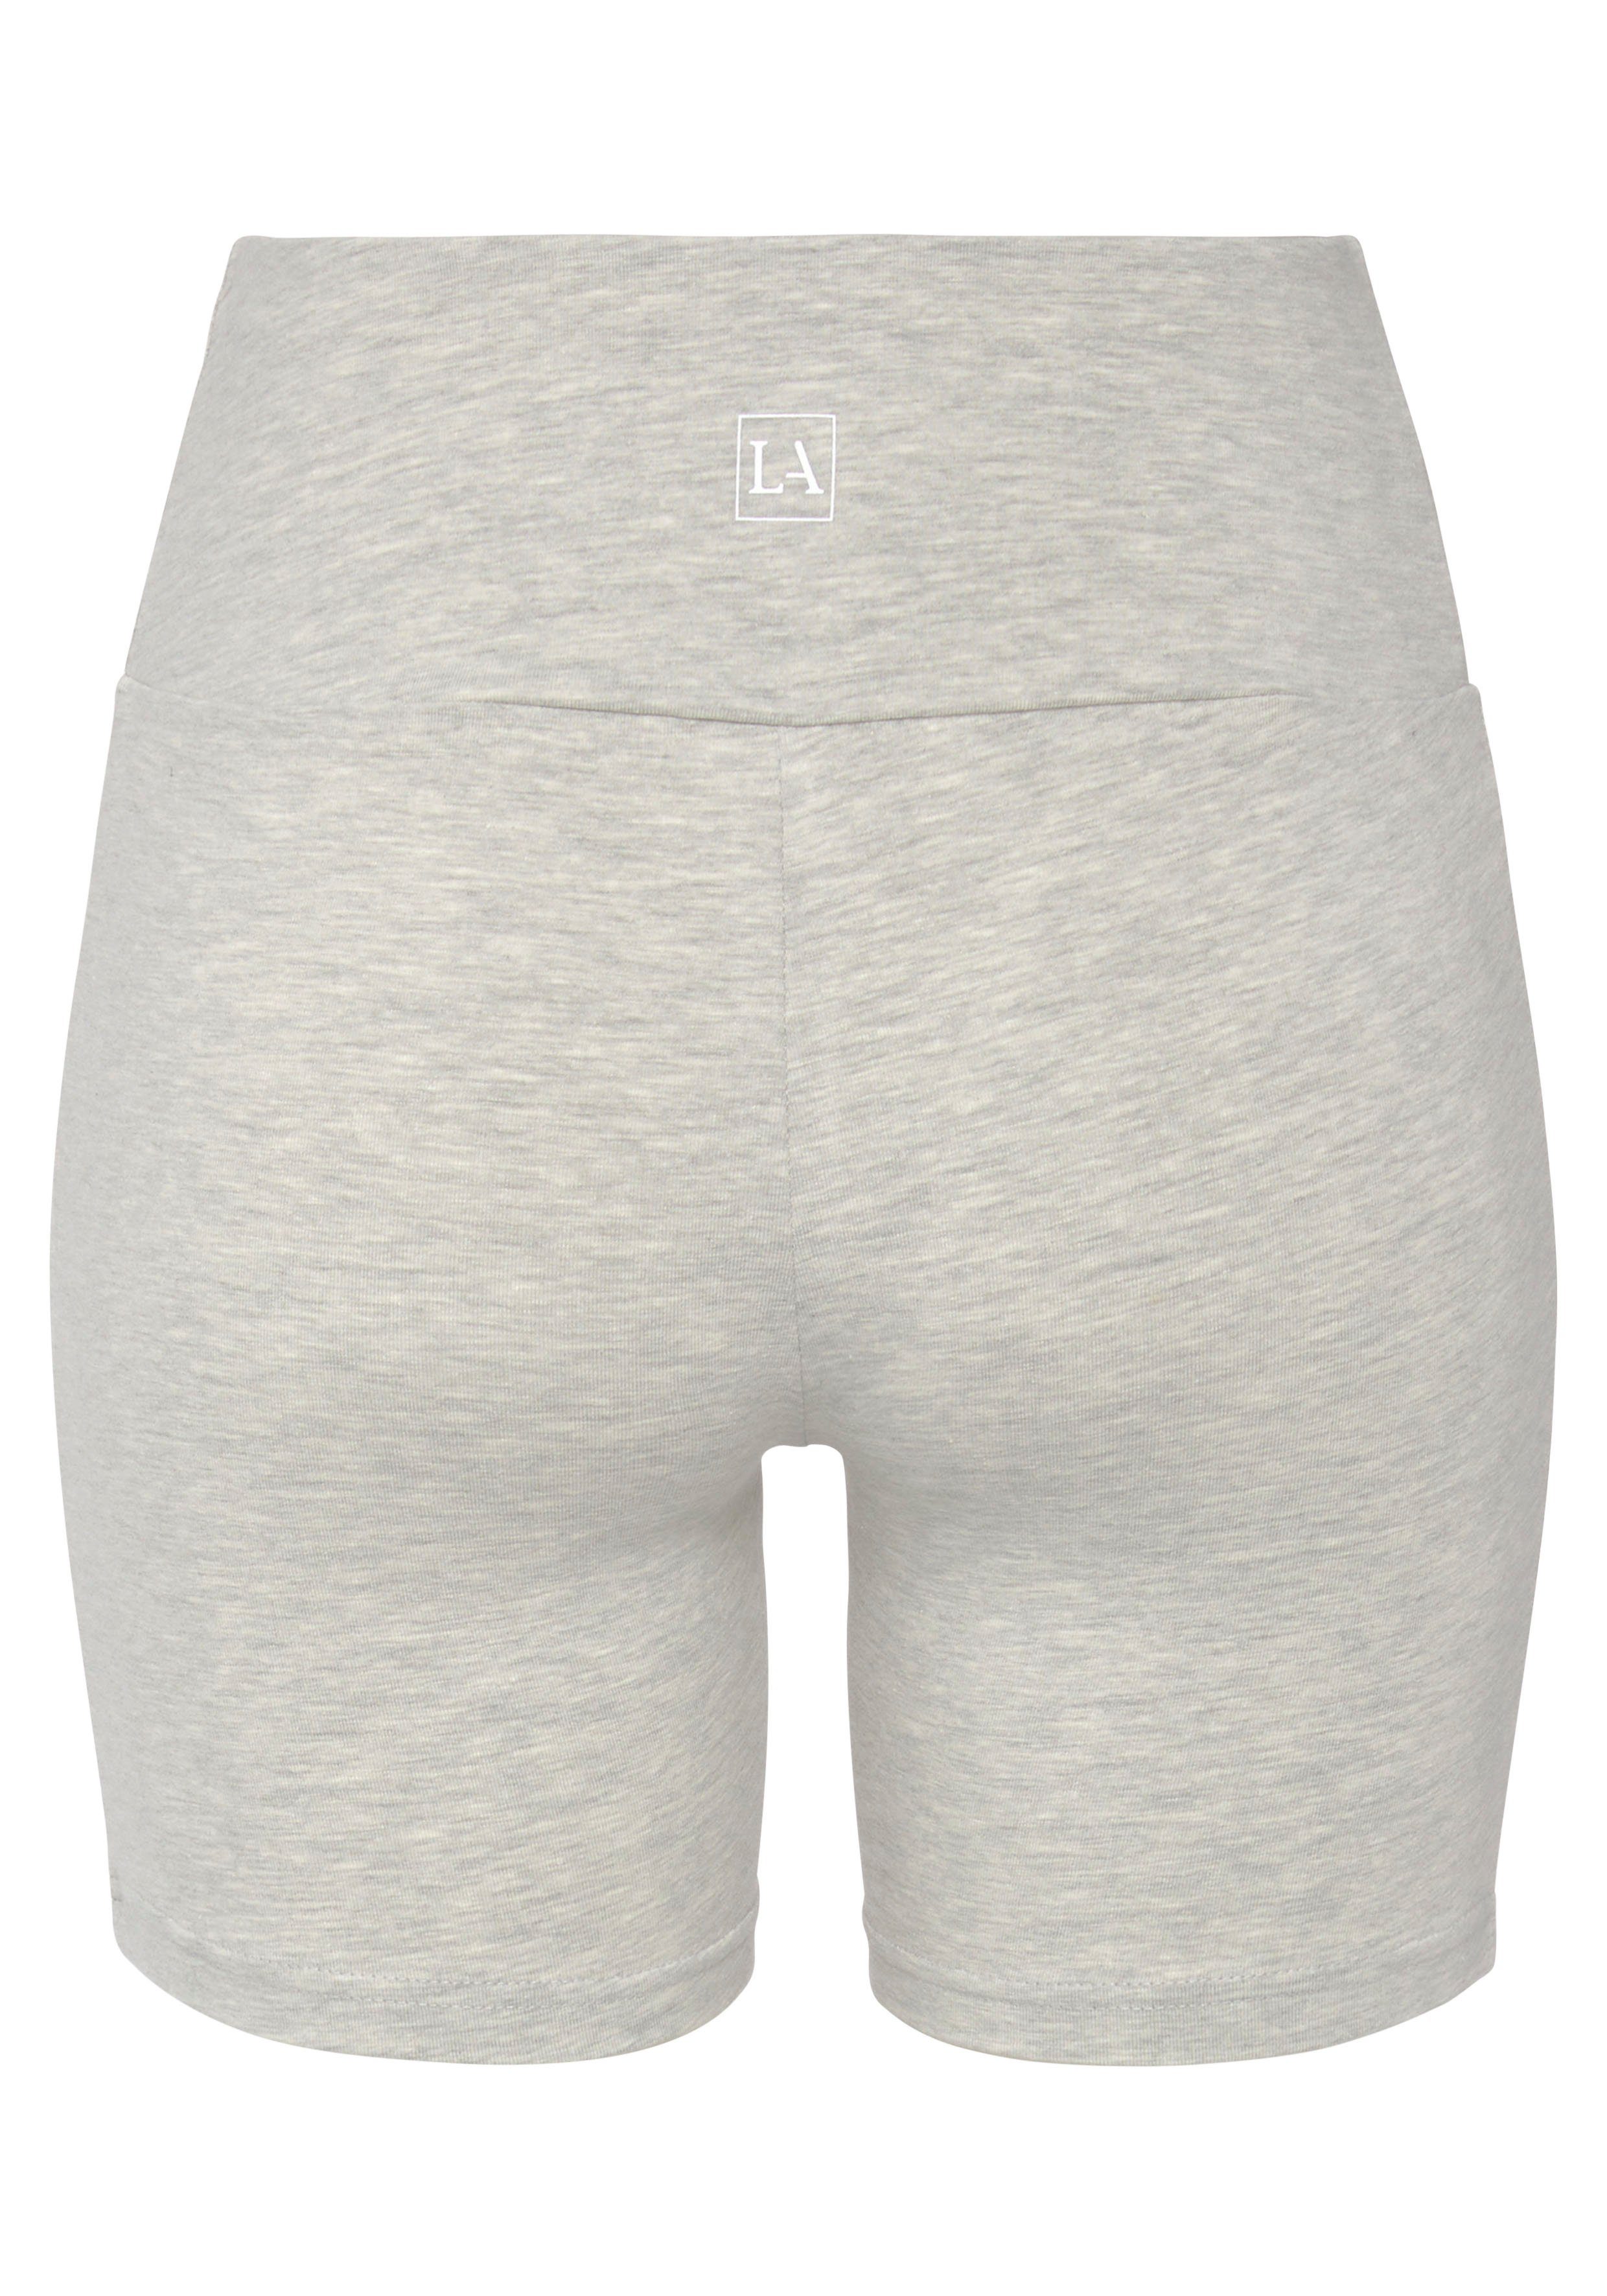 LASCANA und Logodruck breitem Shorts meliert mit grau Bündchen hell